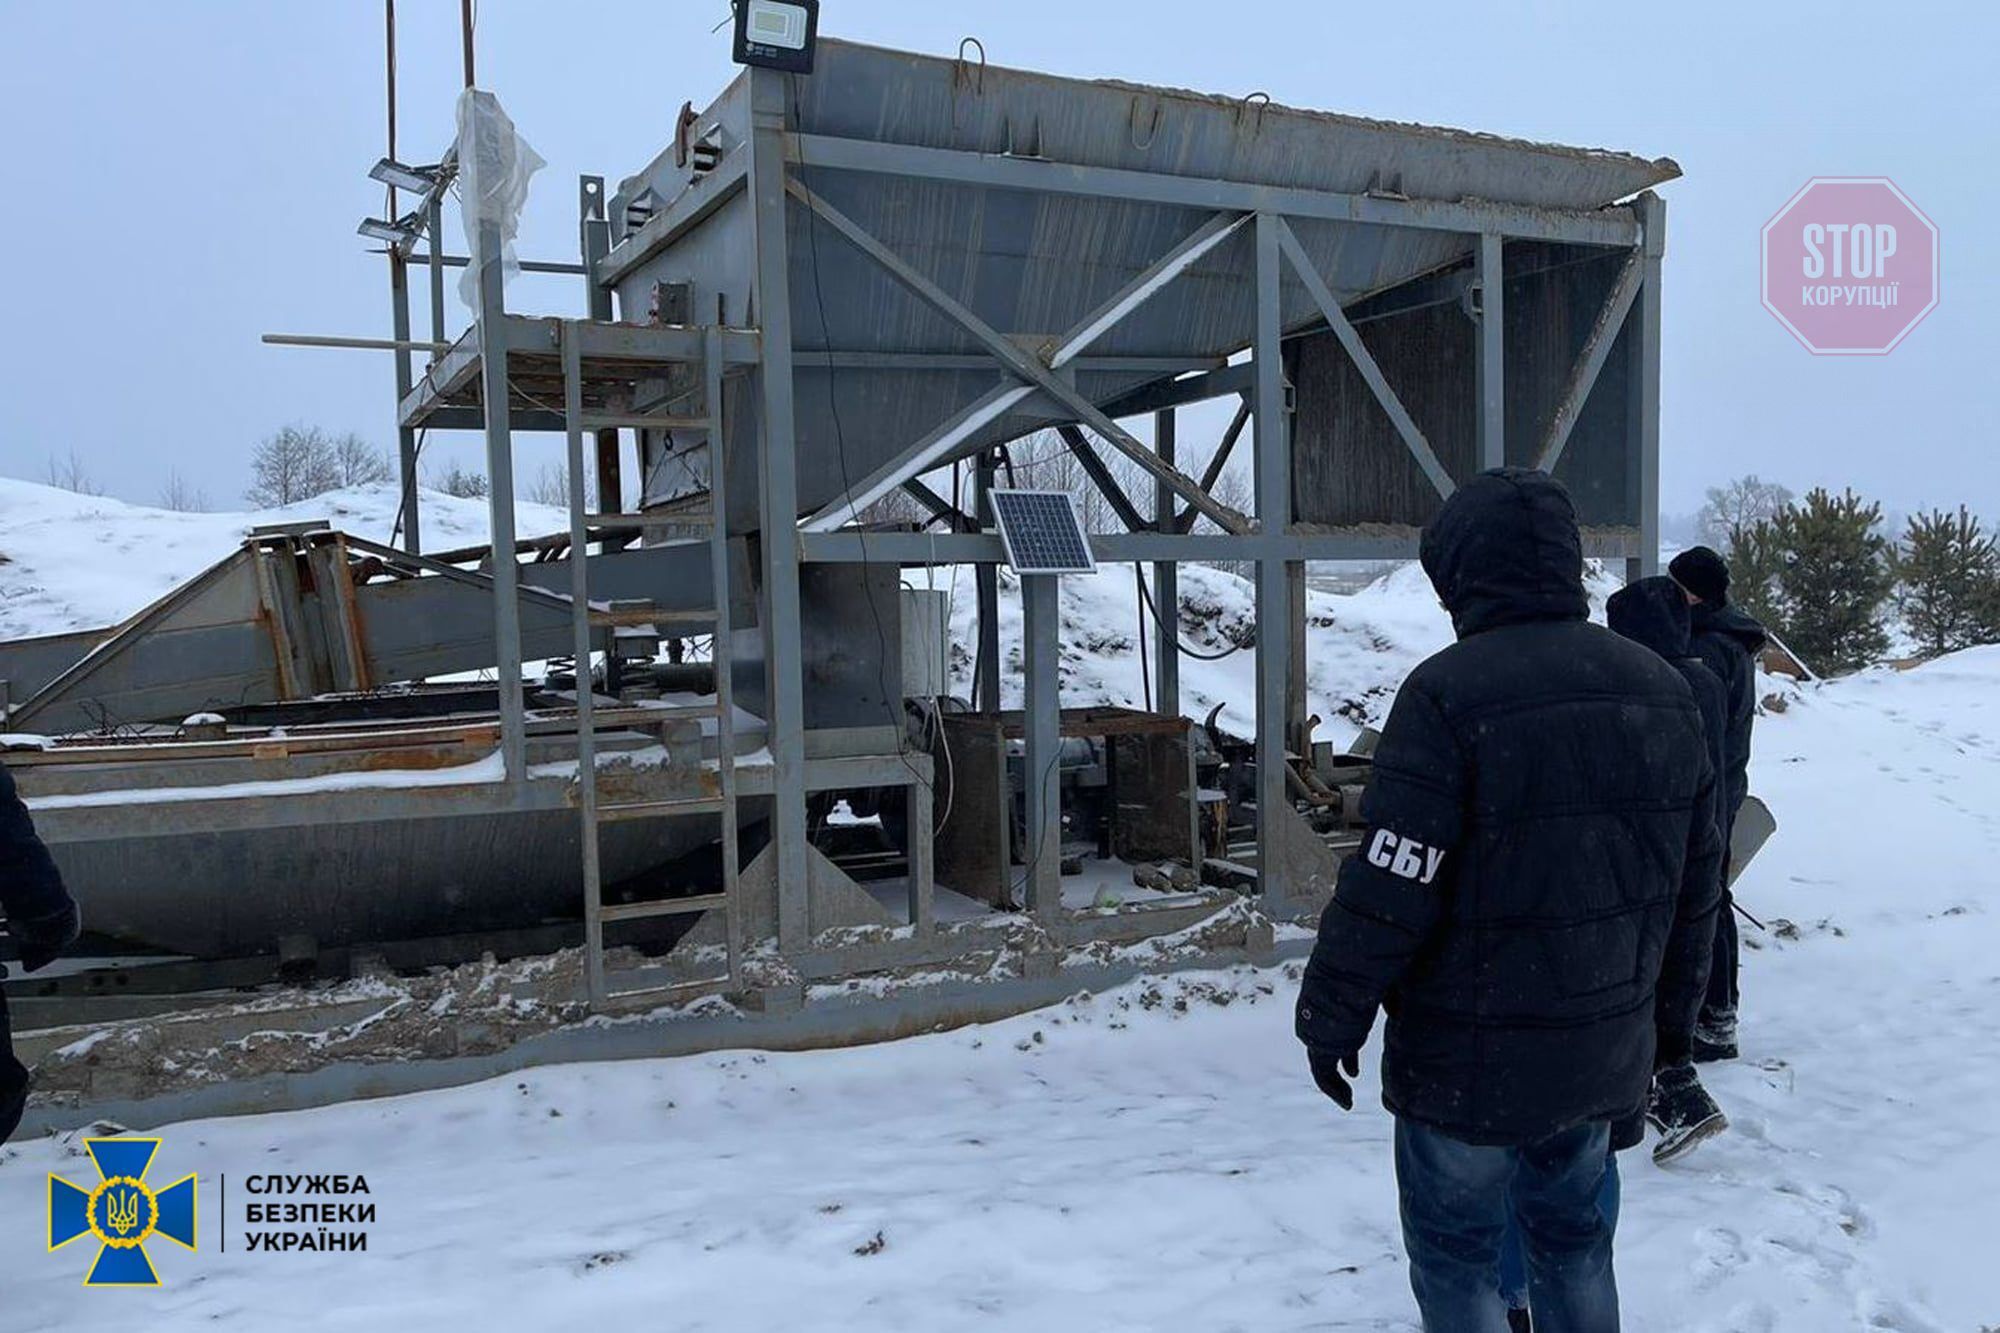  Служба безпеки зупинила незаконний видобуток бурштину на Житомирщині Фото: СБУ